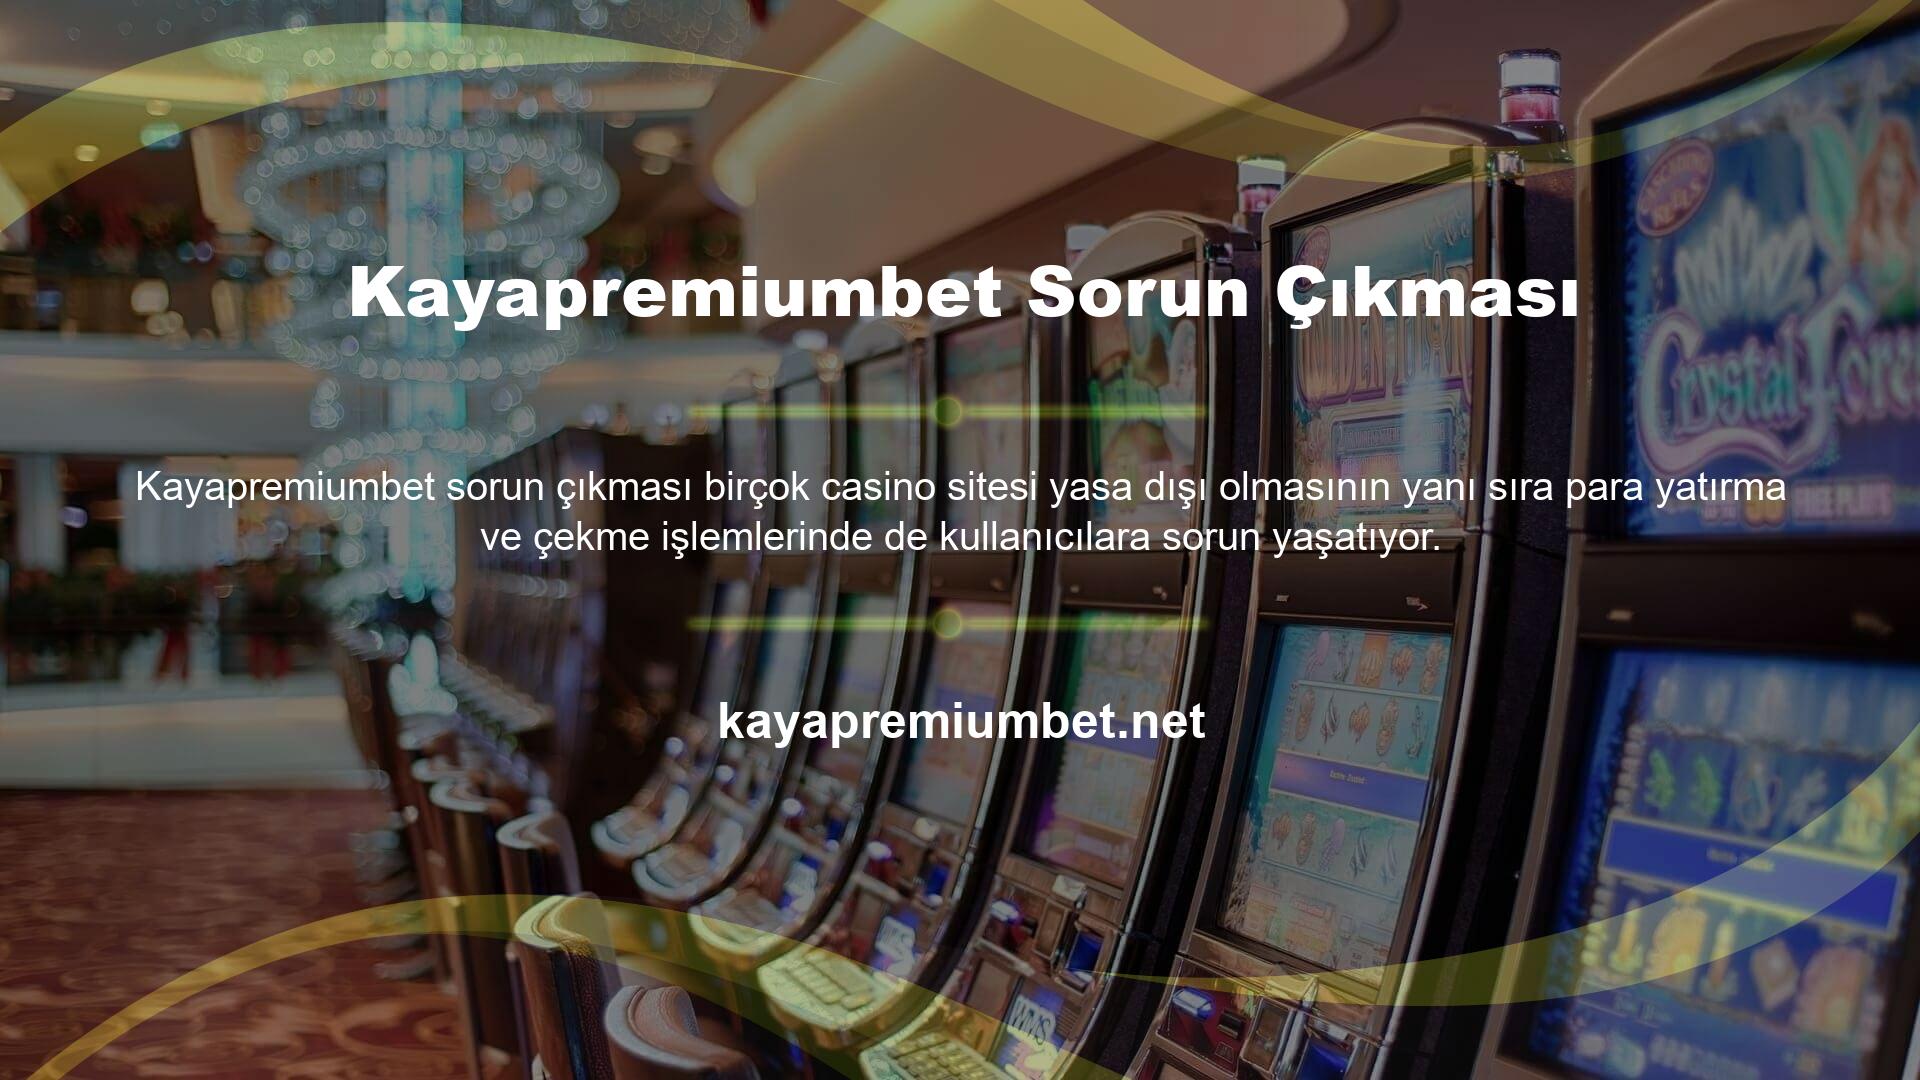 Yasal bir casino sitesi olan Kayapremiumbet, kullanıcılarının para çekme ve para yatırma gibi işlemlerde sıkıntı yaşamasını engellemekle kalmıyor, aynı zamanda süreci olabildiğince kolaylaştırıyor